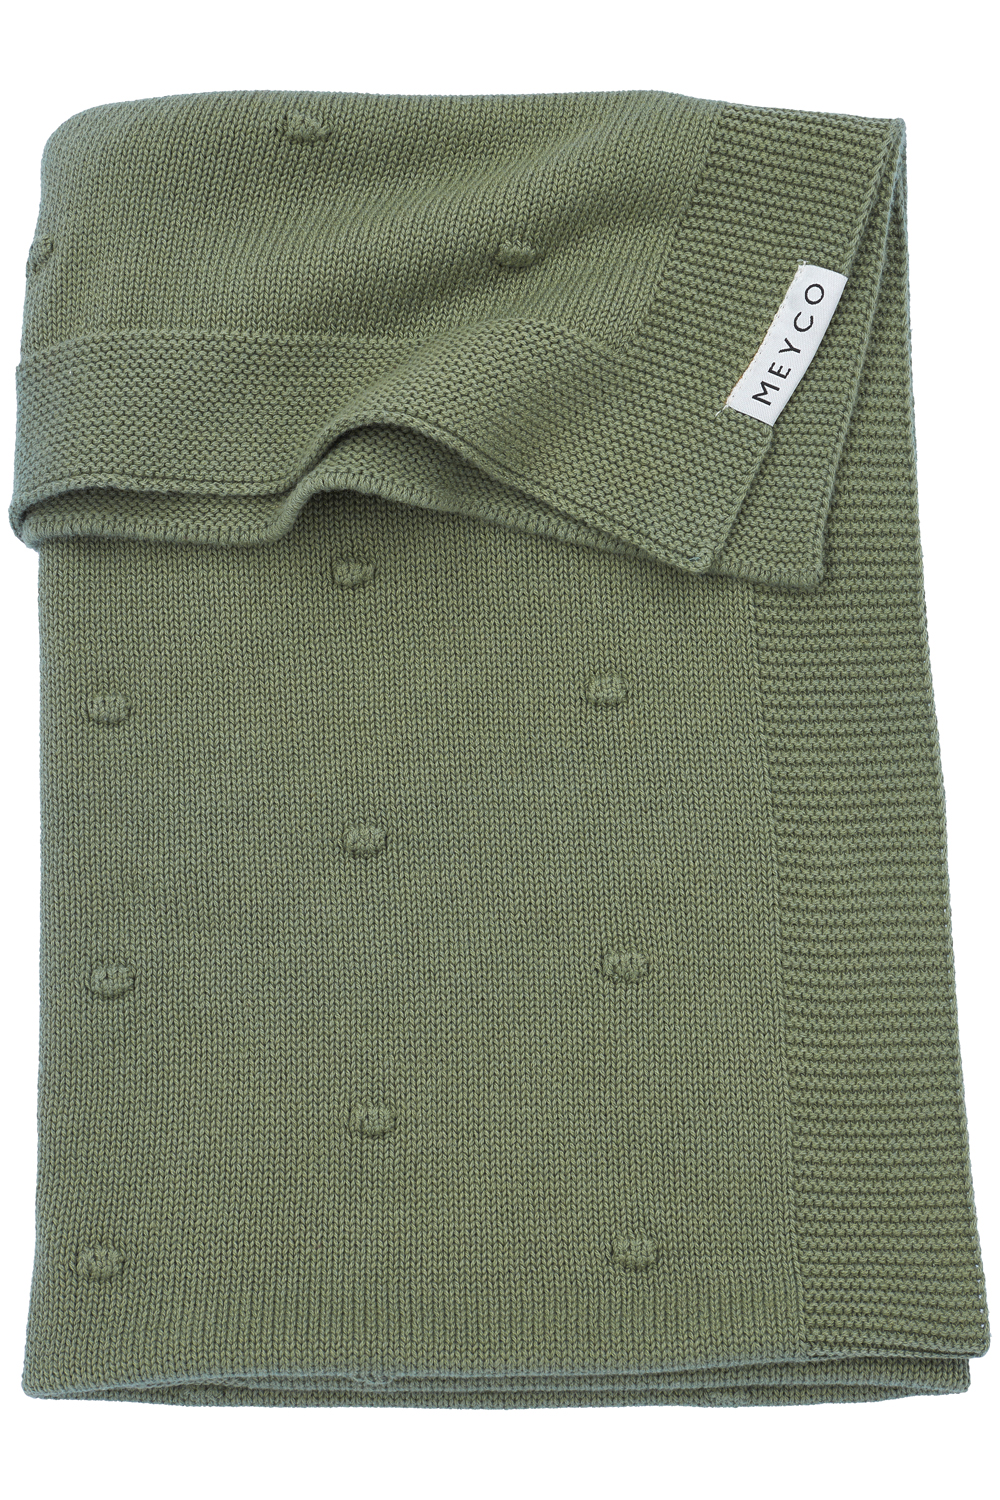 Crib Blanket Mini Knots - Forest Green - 75x100cm